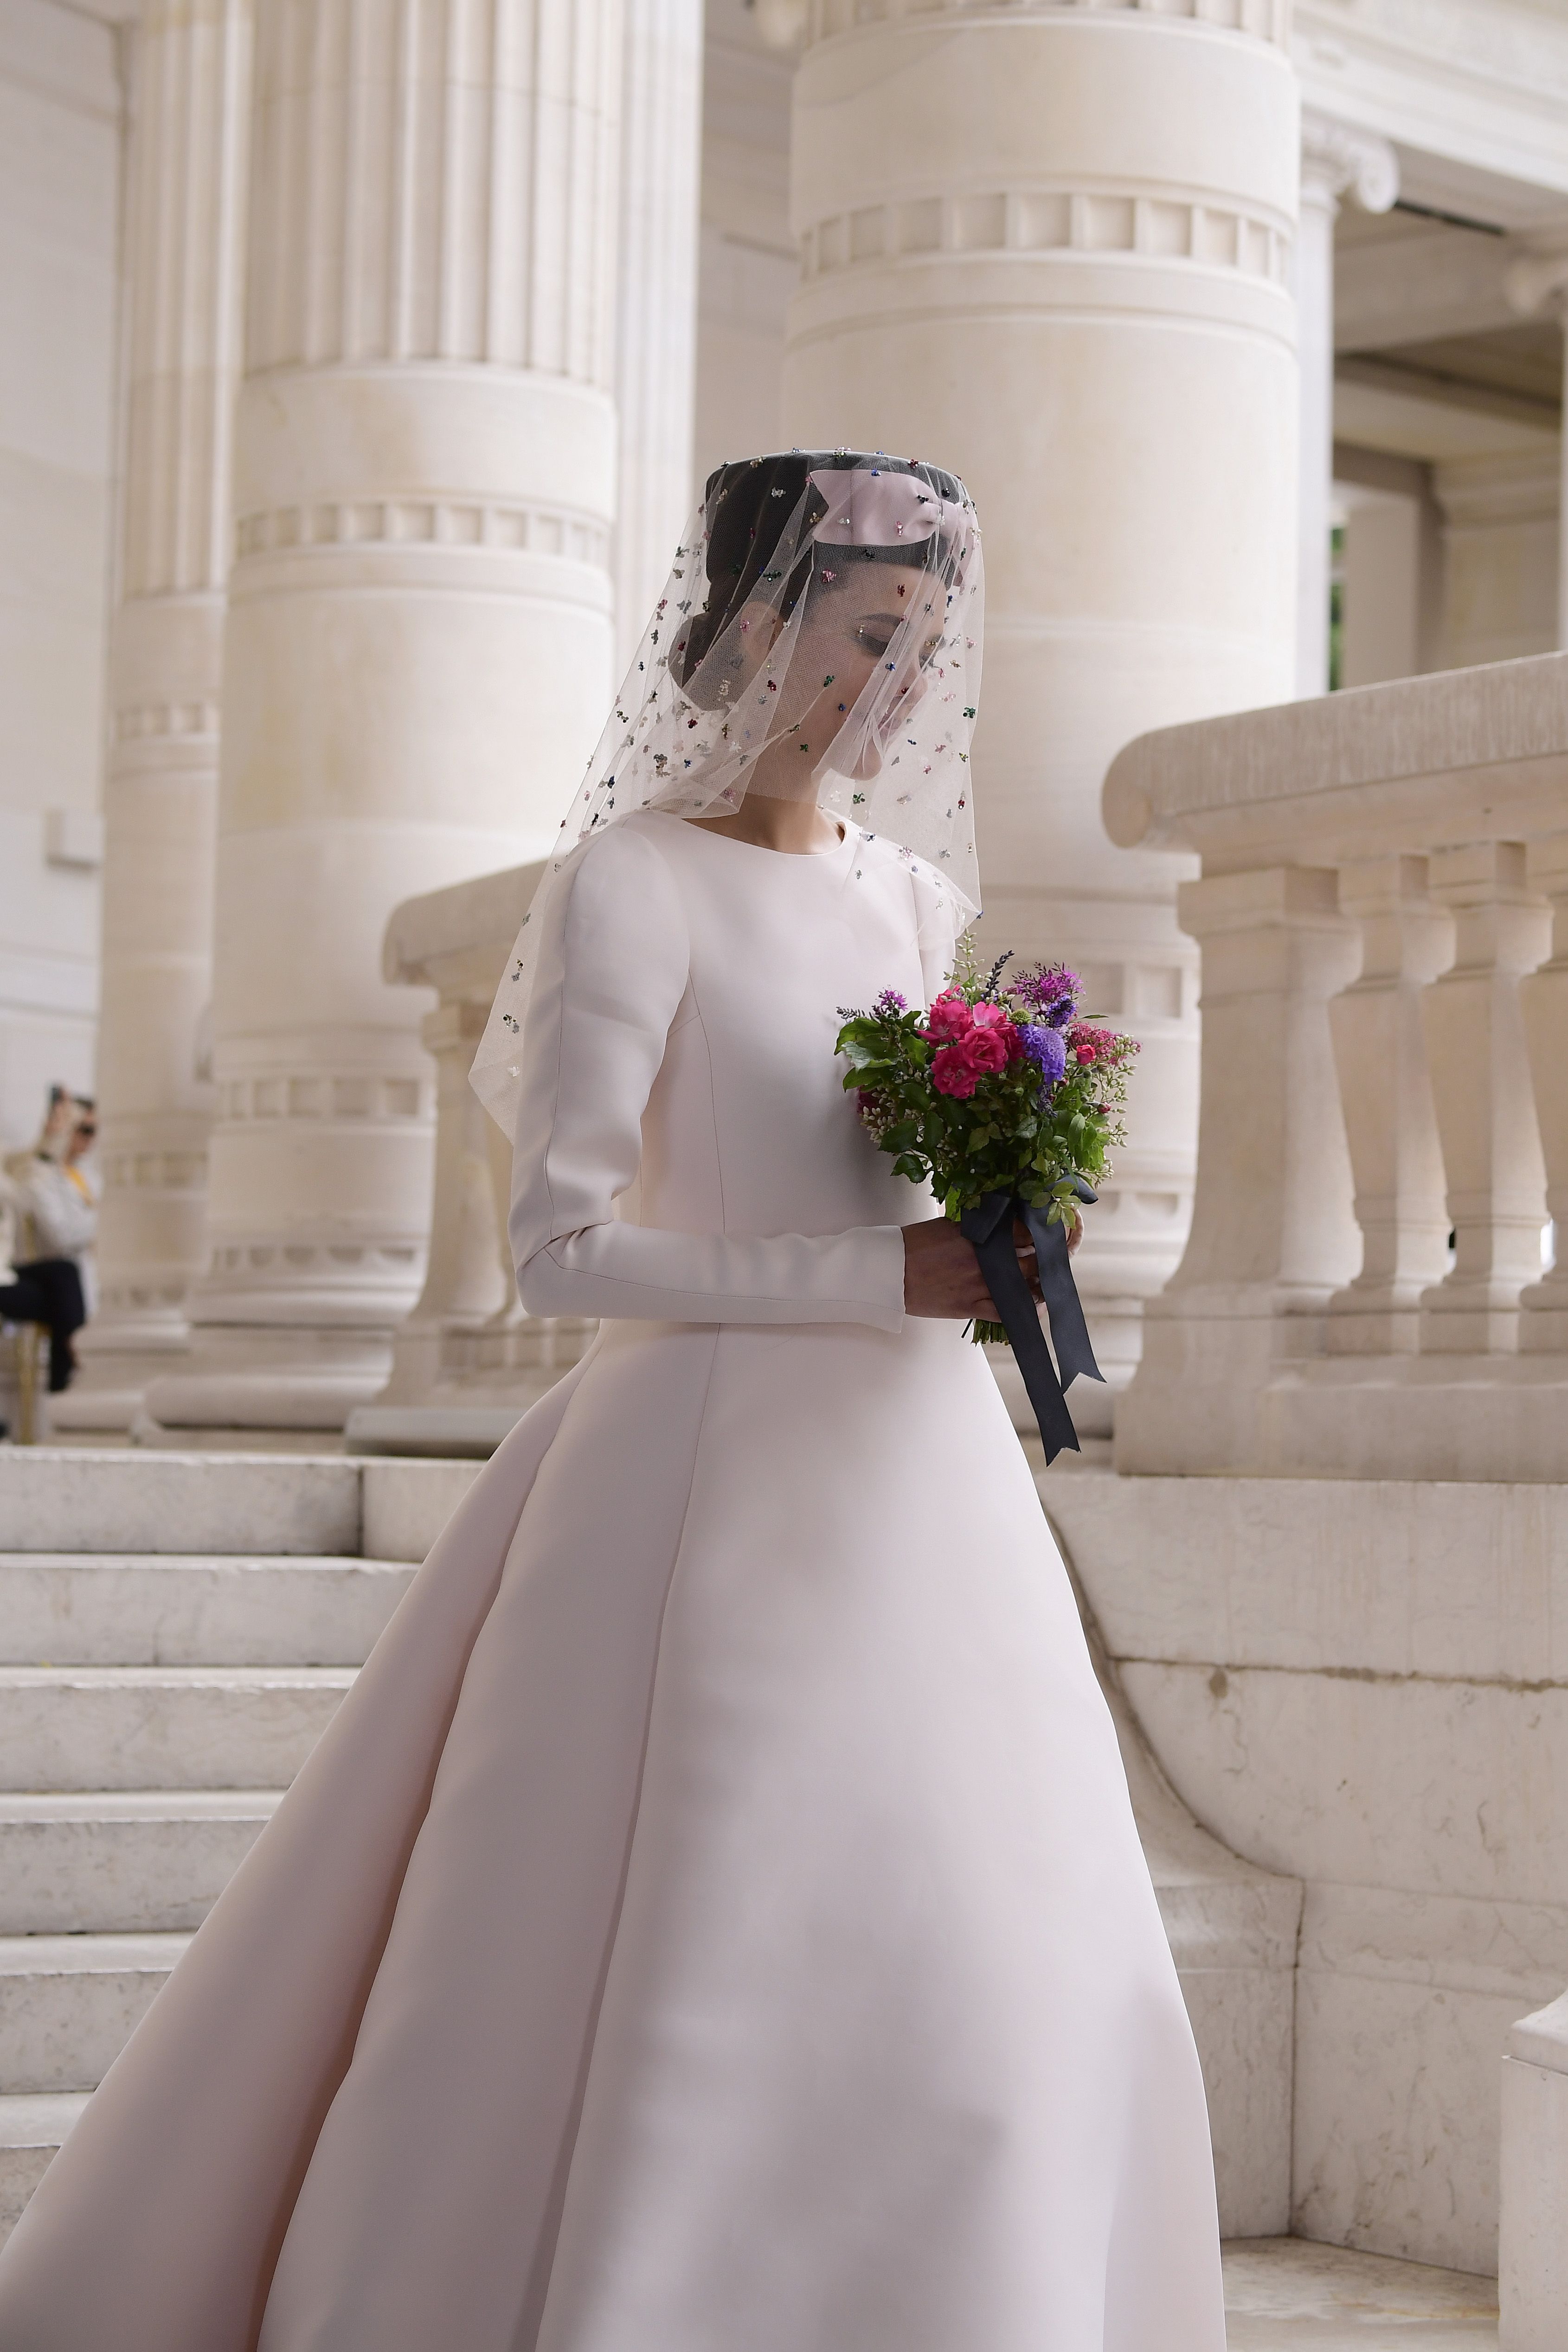 El vestido de Chanel que Tamara Falcó quería copiar para su boda